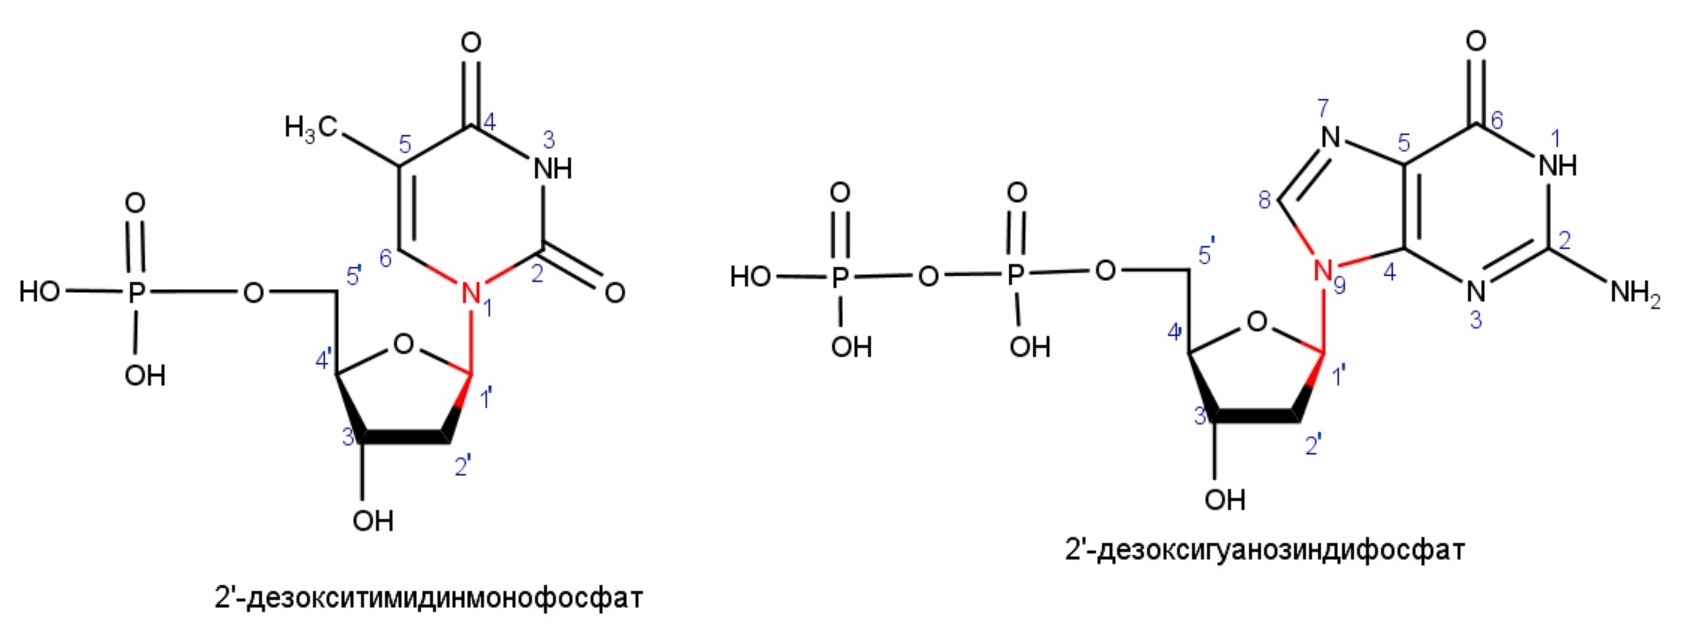 2'-дезоксигуанозиндифосфат, 2'-дезокситимидинмонофосфат